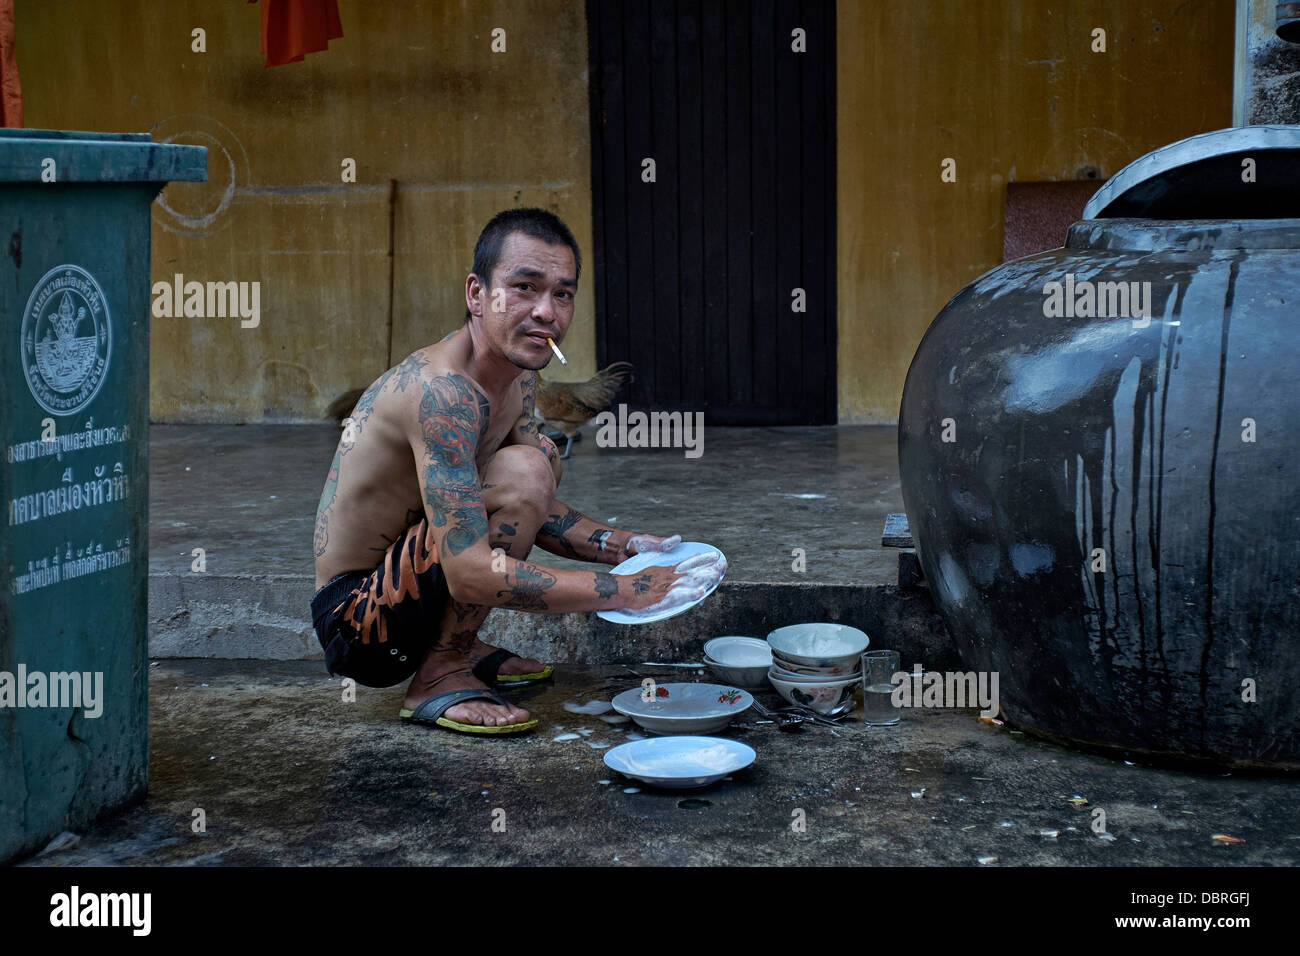 Mann abwaschen außerhalb. Thailand-Straßenszene. S. E. Asien Stockfoto